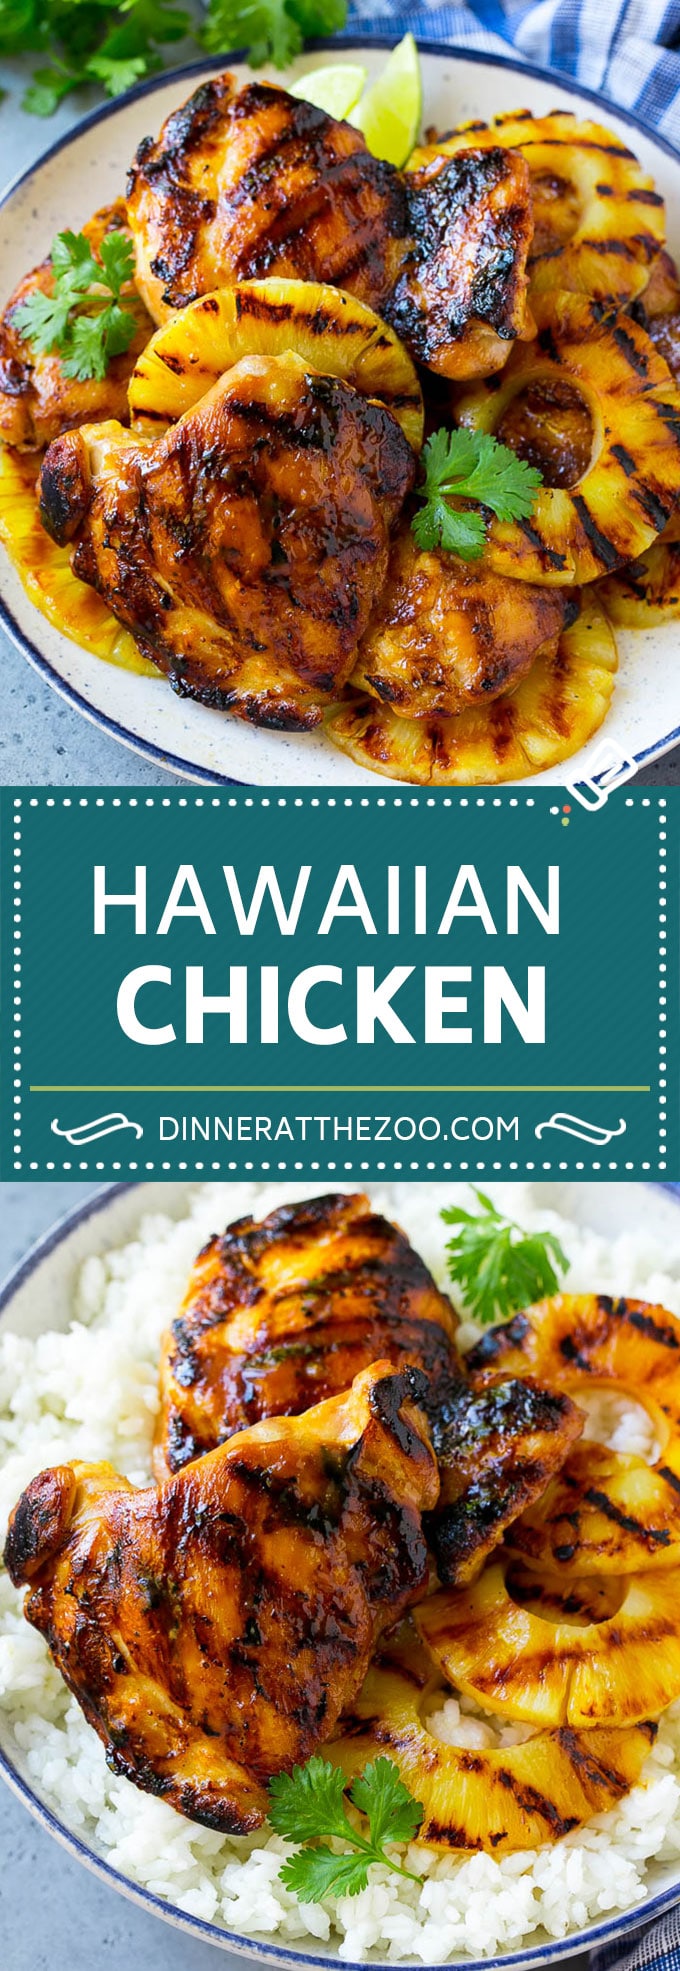 Hawaiian Chicken Recipe | Grilled Chicken | Pineapple Chicken #chicken #grilling #dinner #pineapple #dinneratthezoo